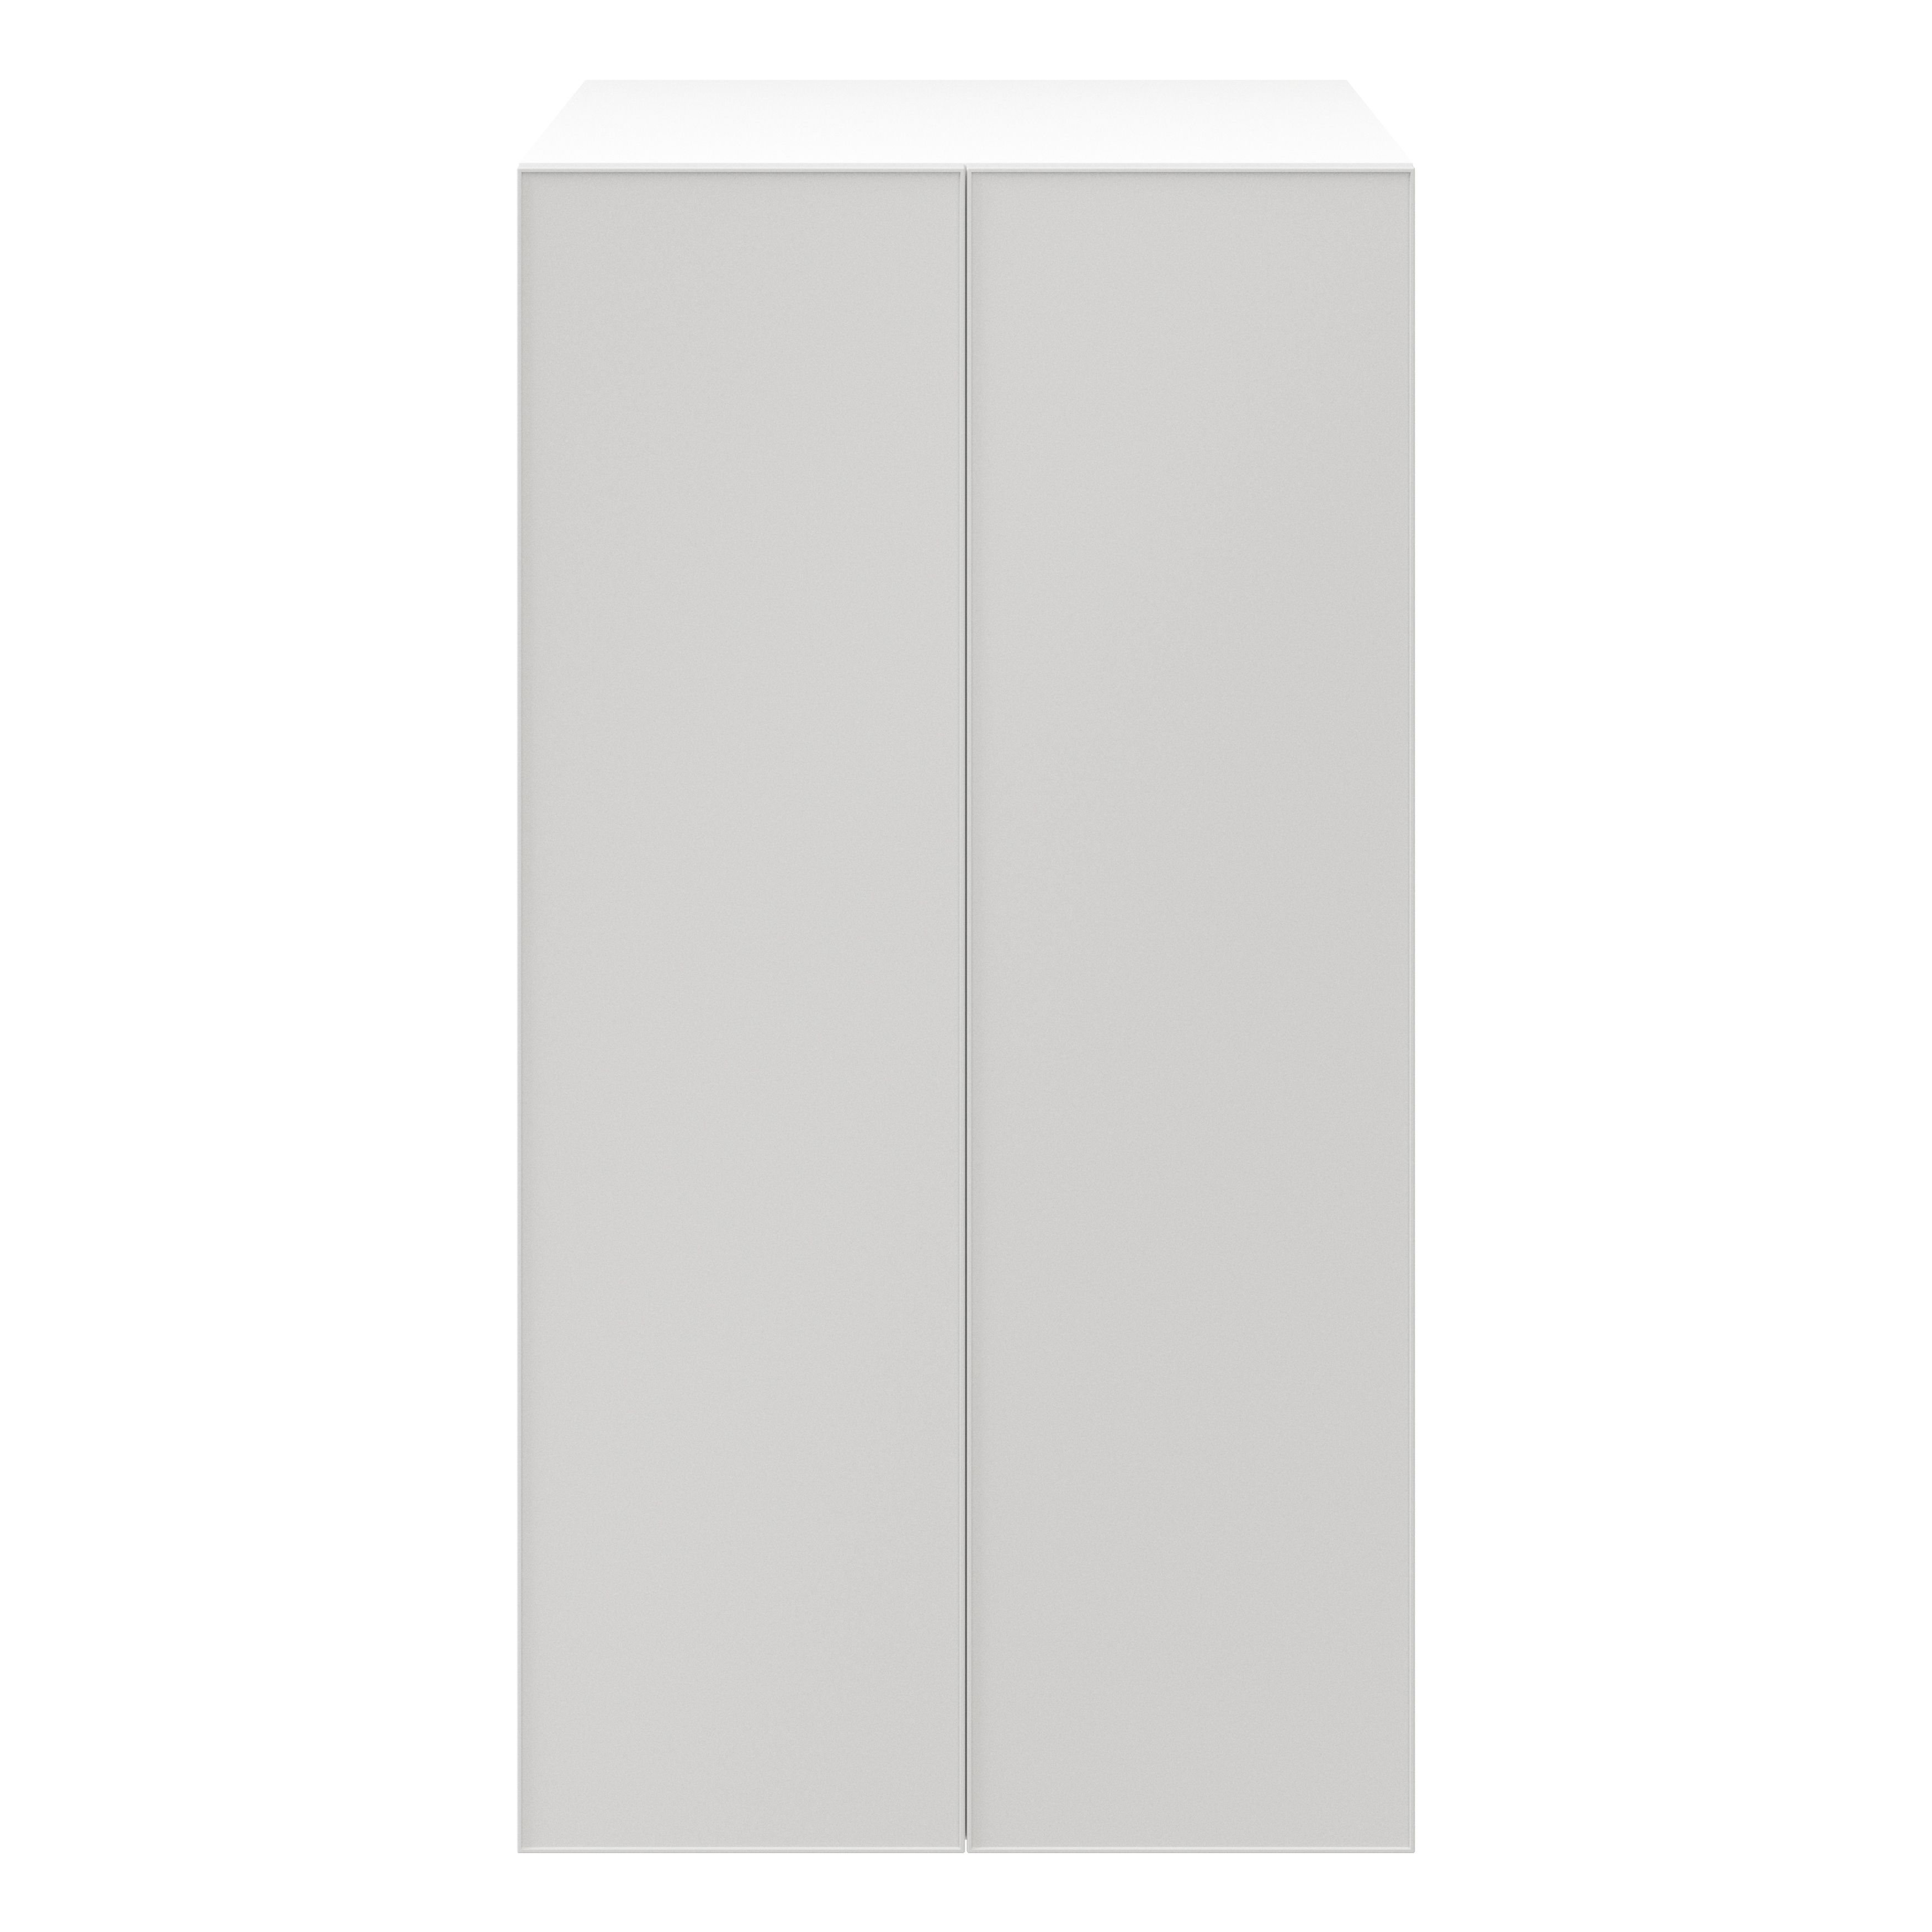 GoodHome Atomia Freestanding Matt Light grey & white 2 door Medium ...